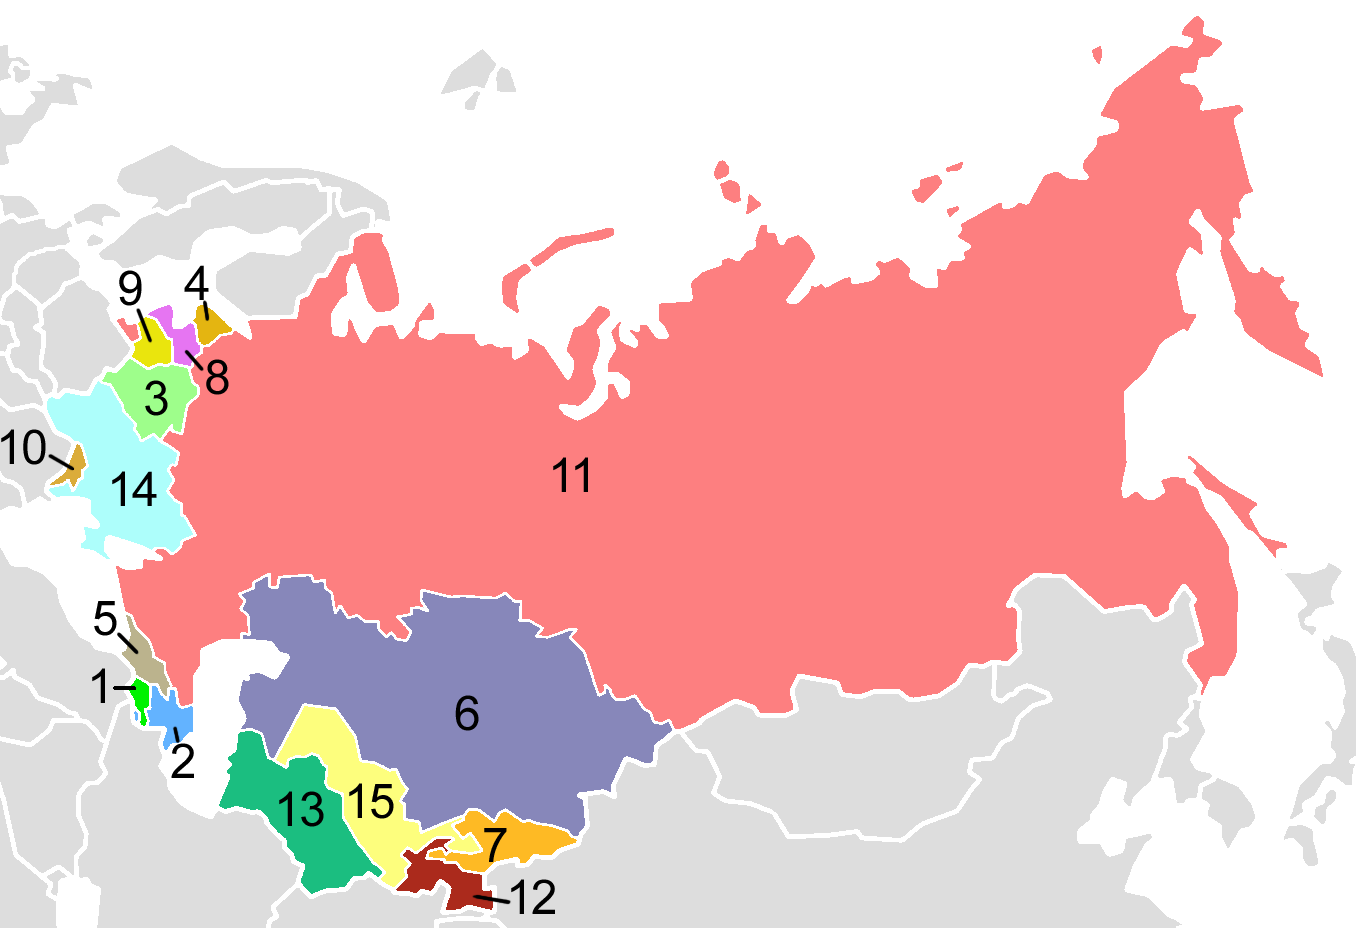 Republics of the USSR